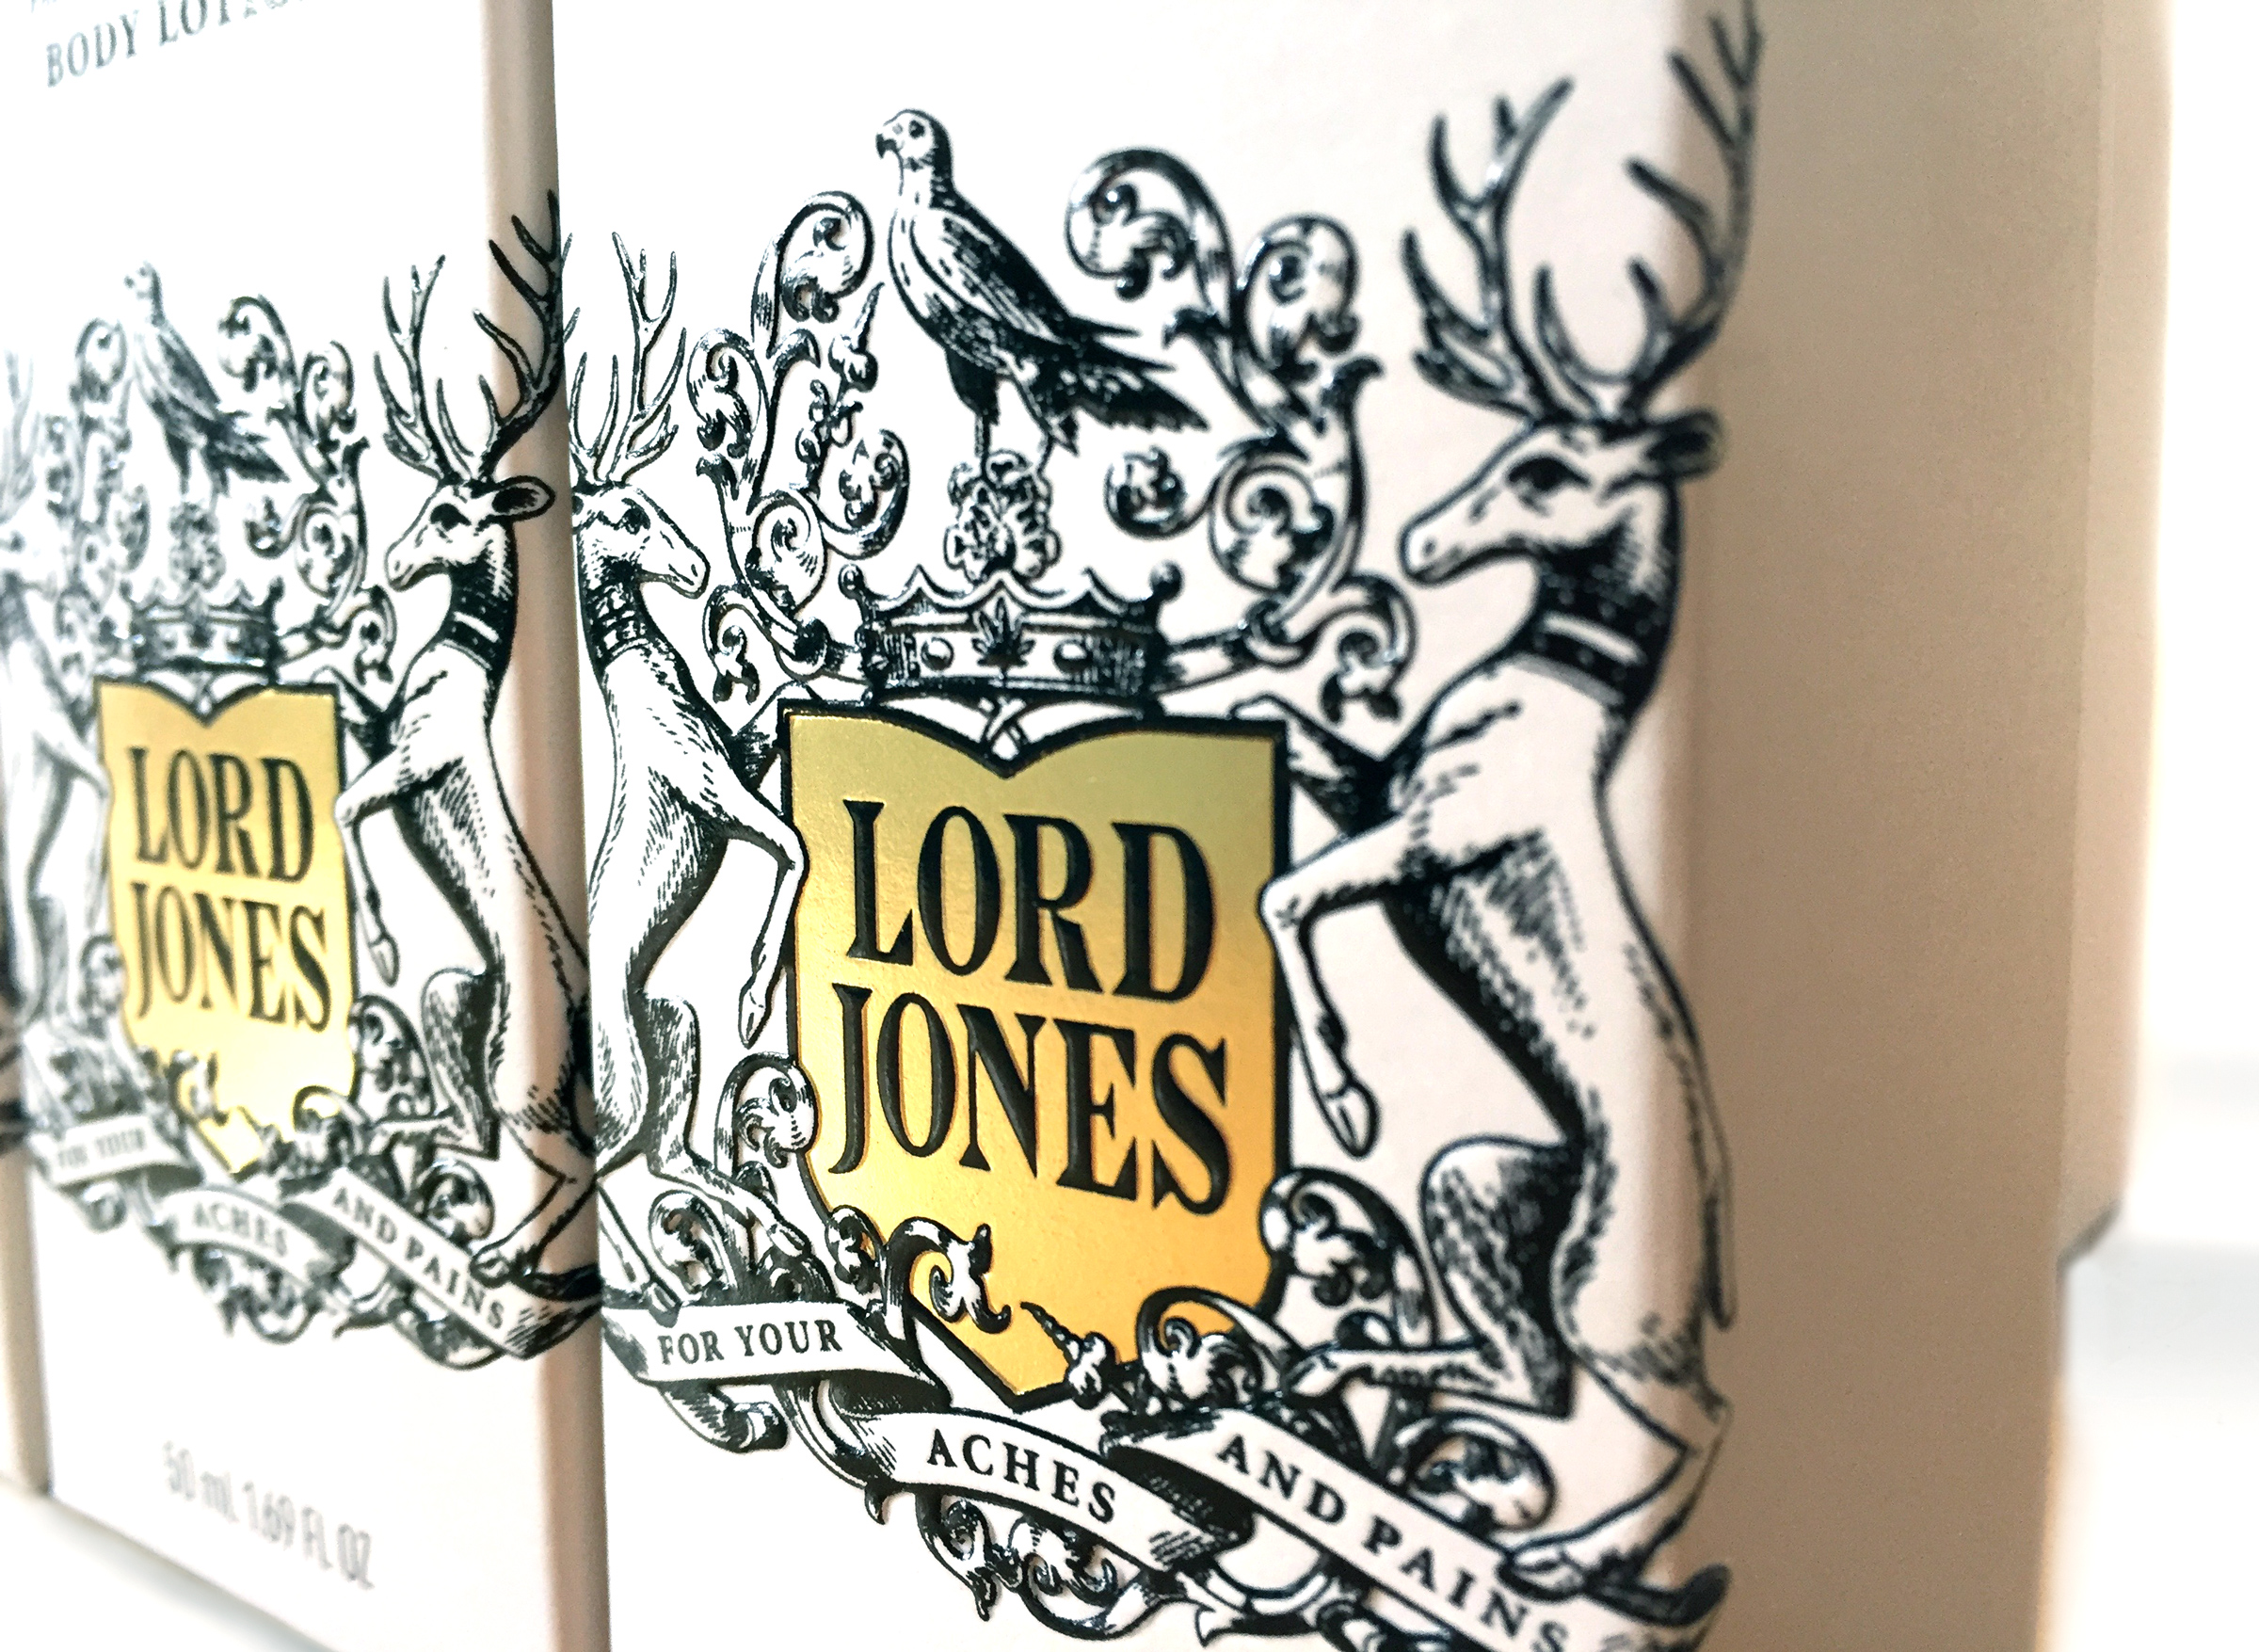 Lord Jones identity design by Werner Design Werks